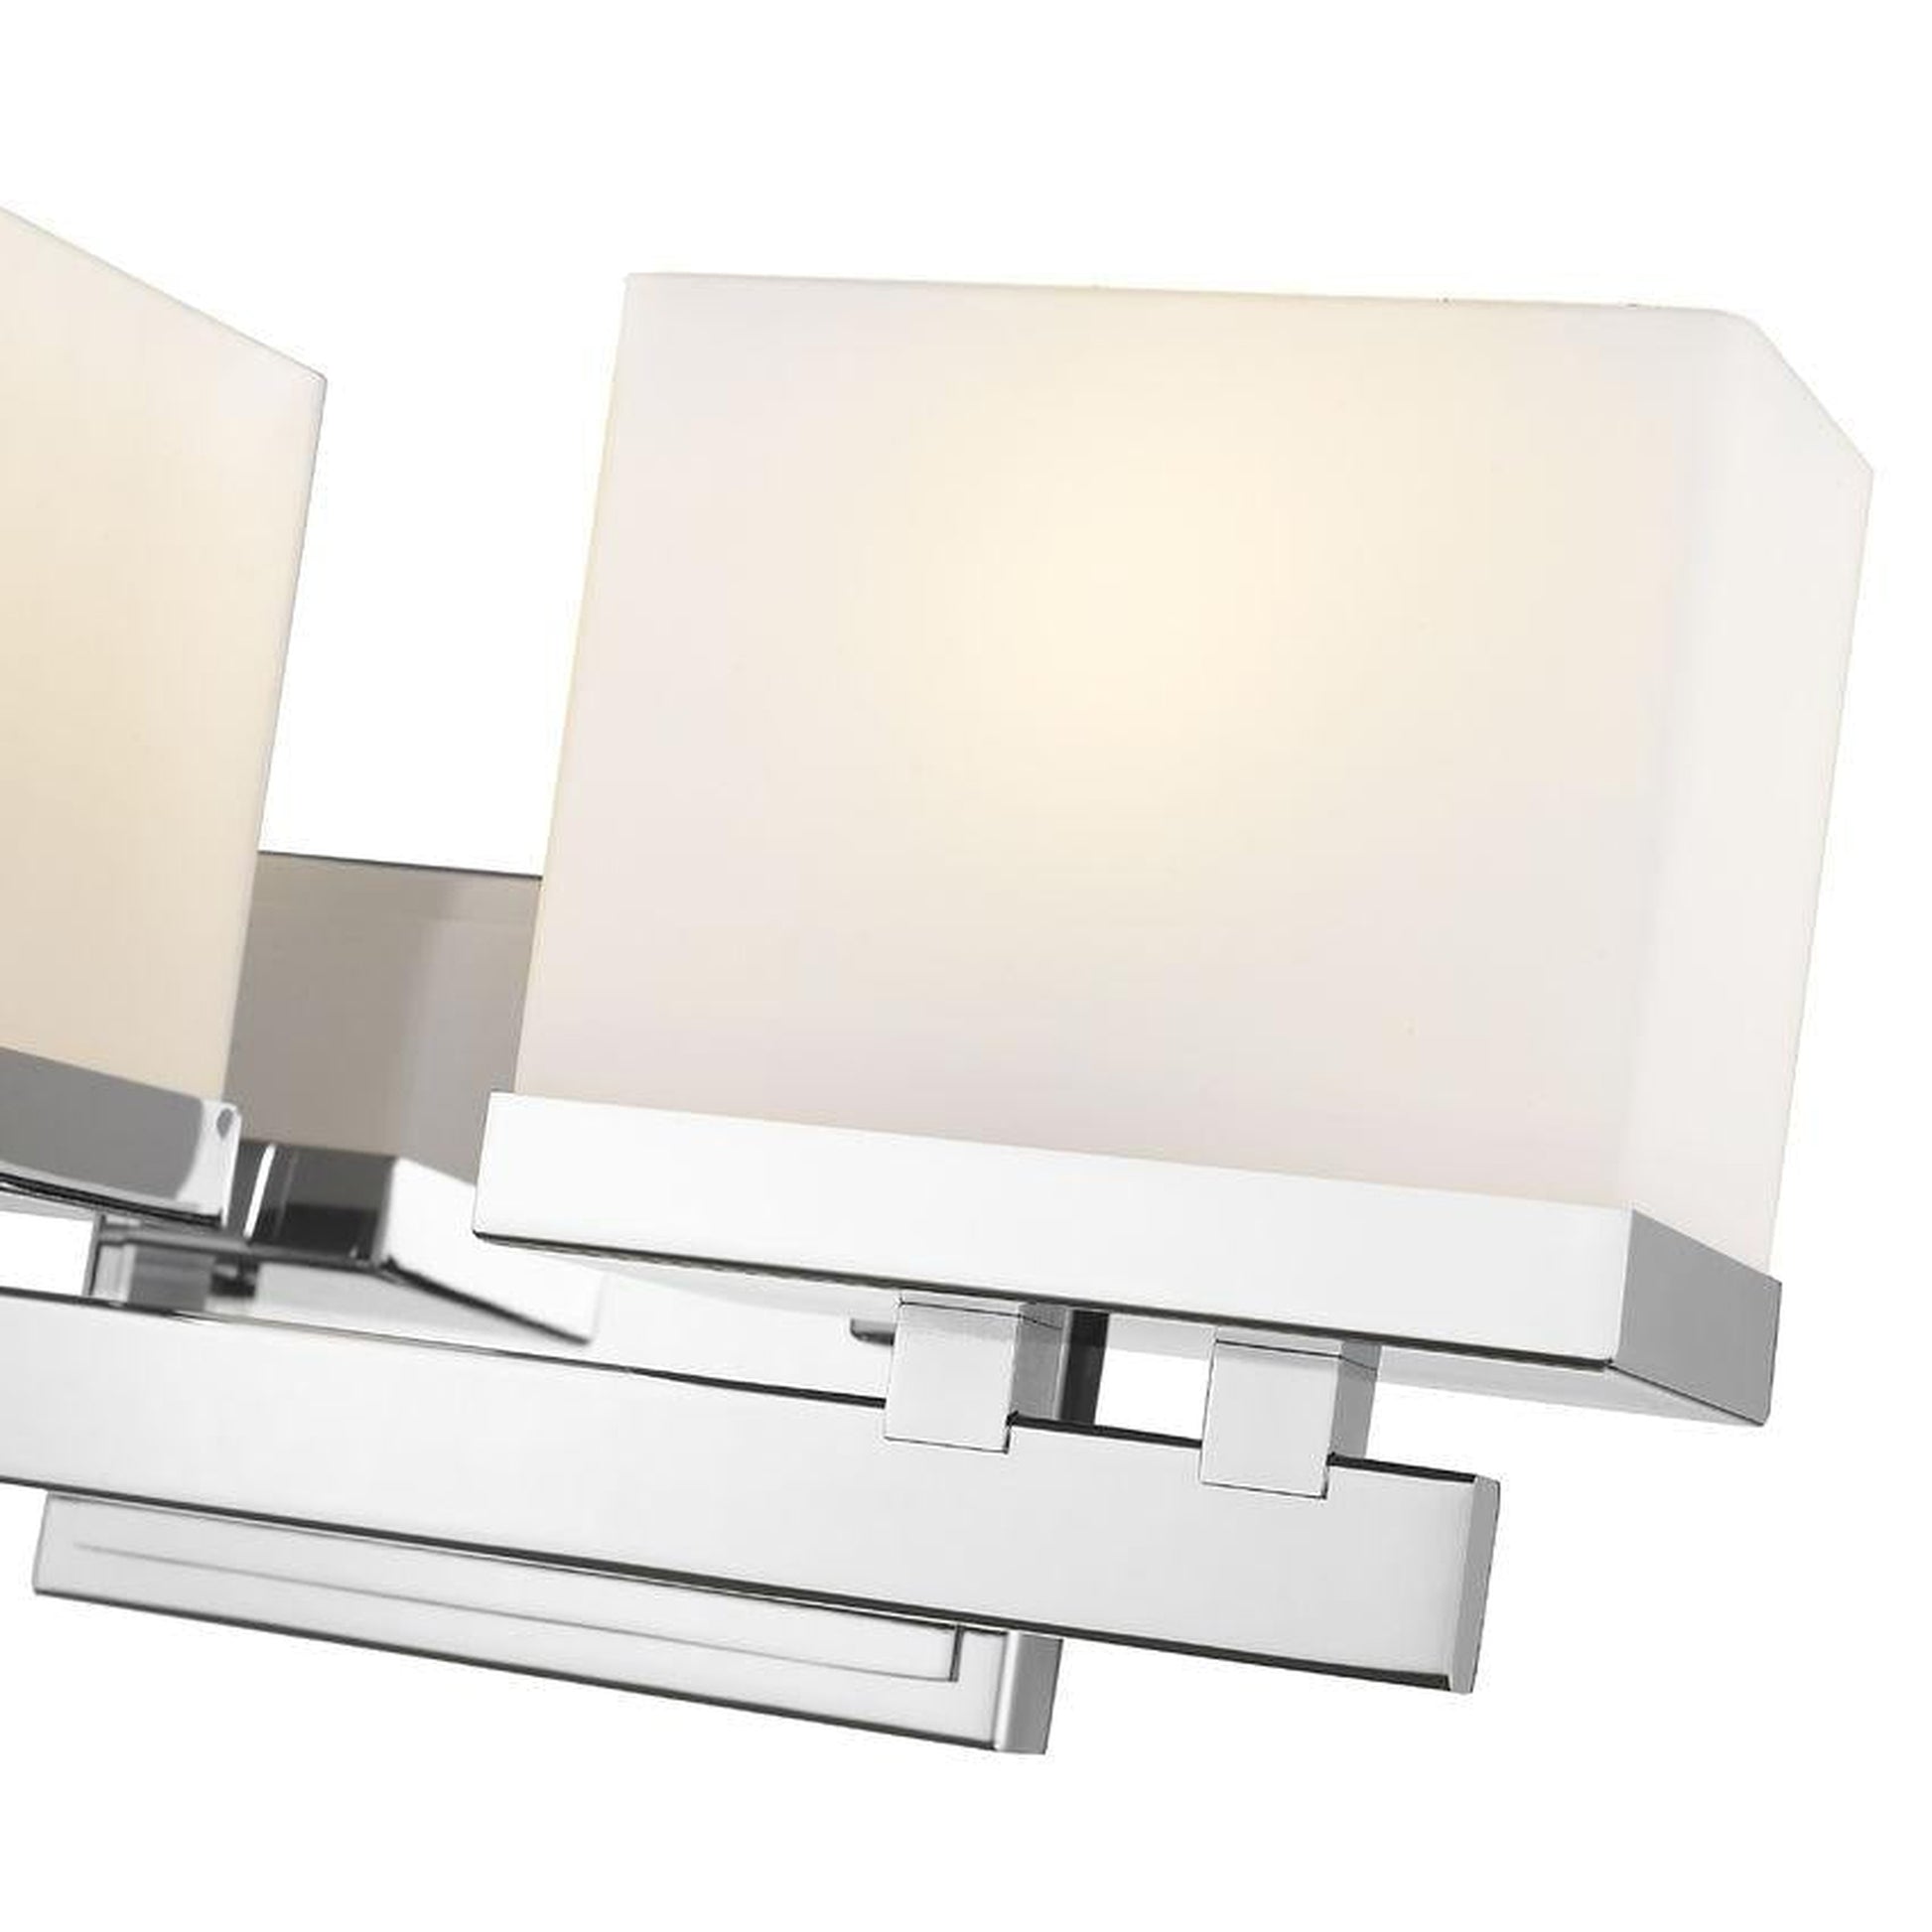 Z-Lite Rivulet 14" 2-Light LED Matte Opal Glass Shade Vanity Light With Chrome Frame Finish